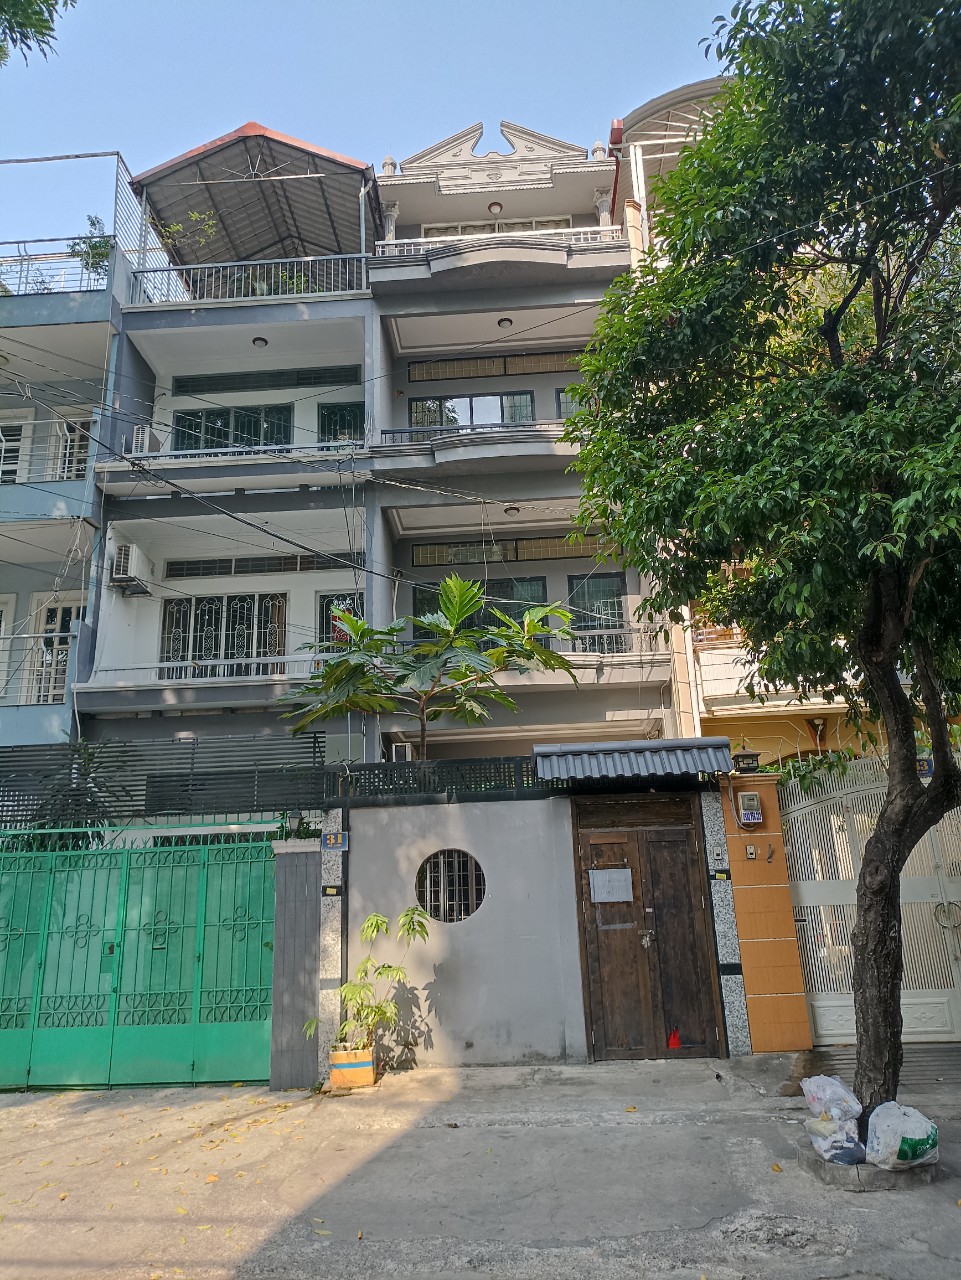 Cho thuê nhà phố Khu Thị Nghè, 31 Mê Linh, phường 19, quận Bình Thạnh, HCM